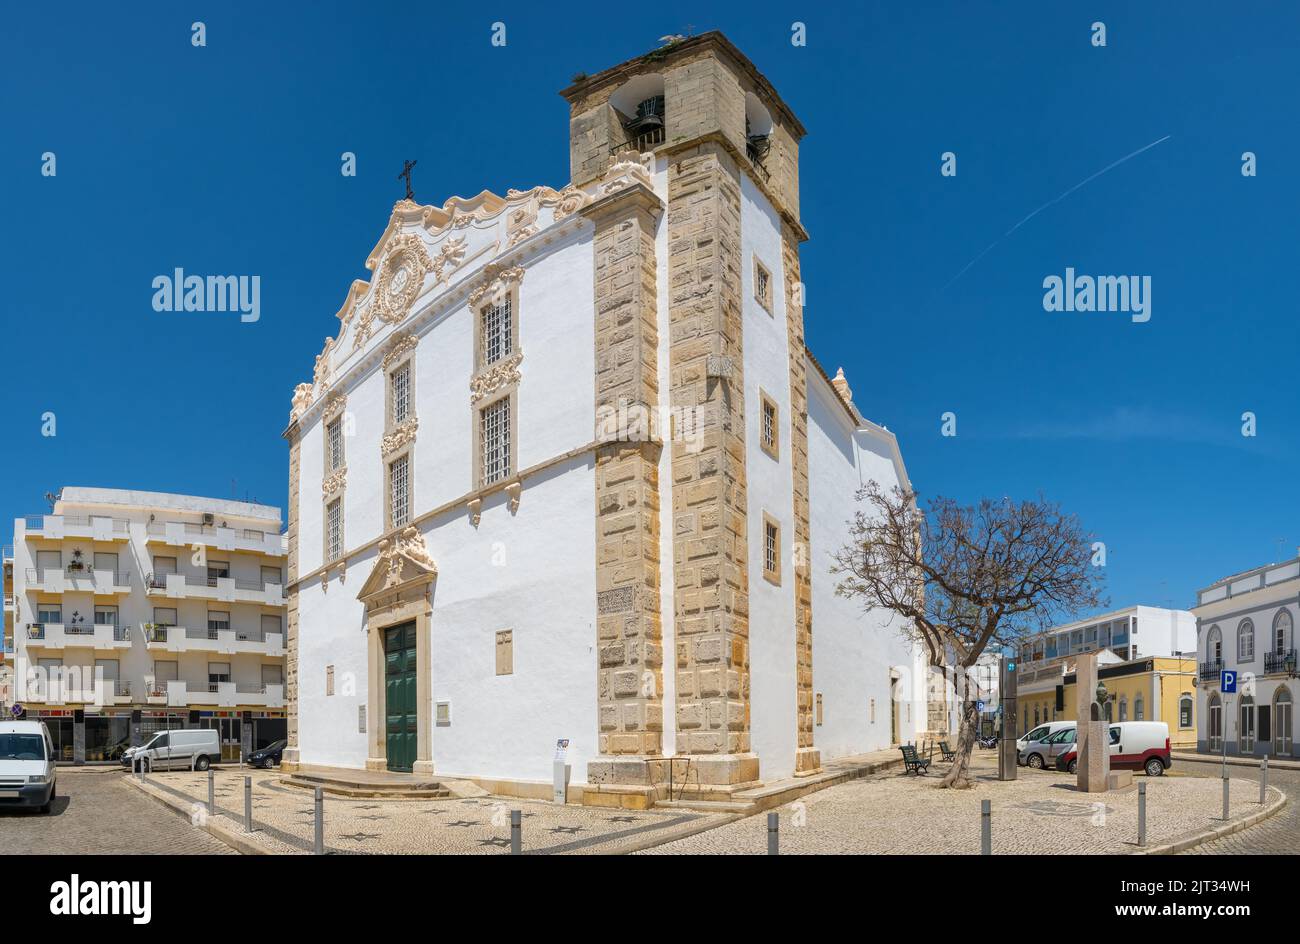 Vista de la iglesia principal de la ciudad de Olhao, Portugal. Foto de stock